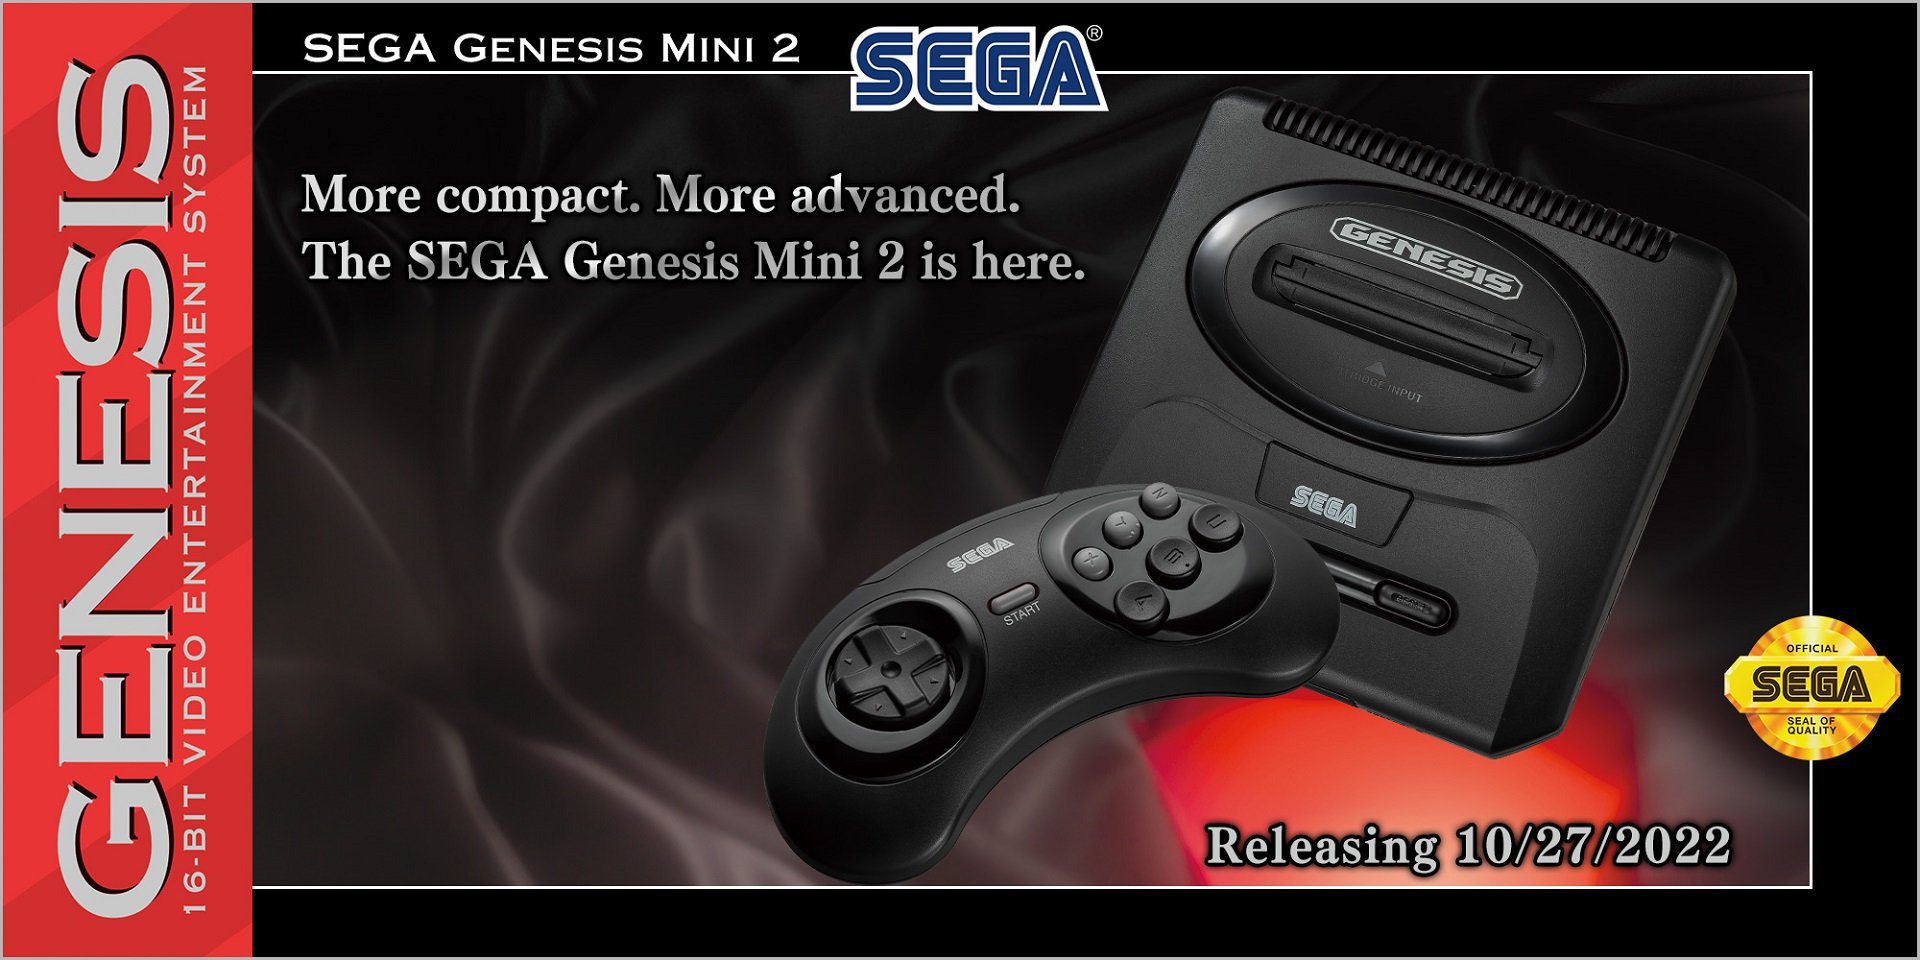 Sega Genesis Mini 2 coming to America this fall - Game Freaks 365